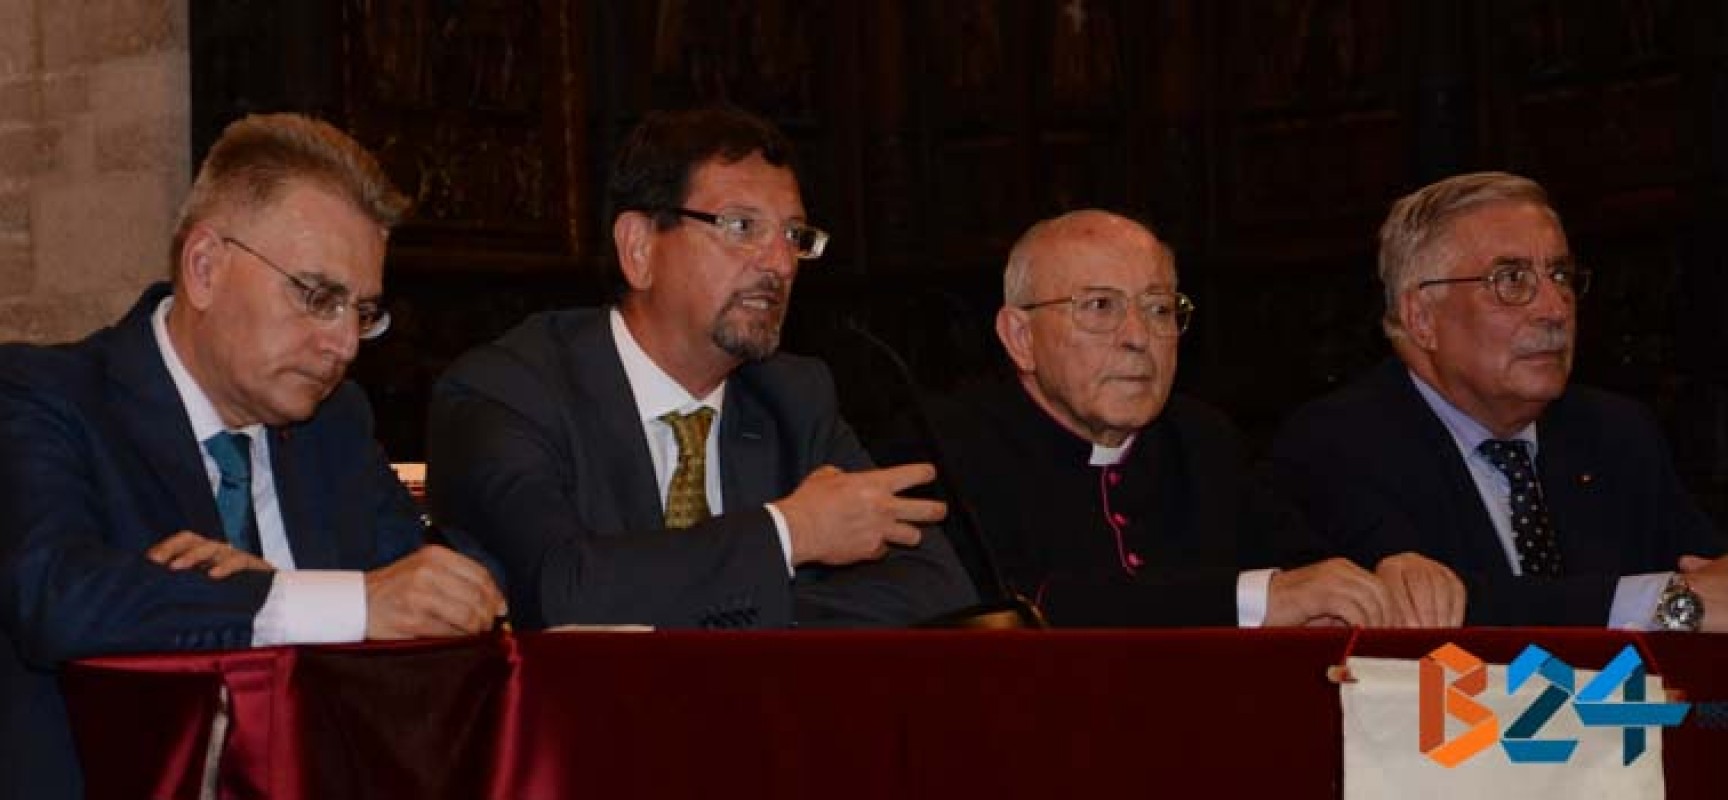 Il vaticanista Muolo a Bisceglie: “Papa Francesco pontefice di lotta, contro il male” / FOTO